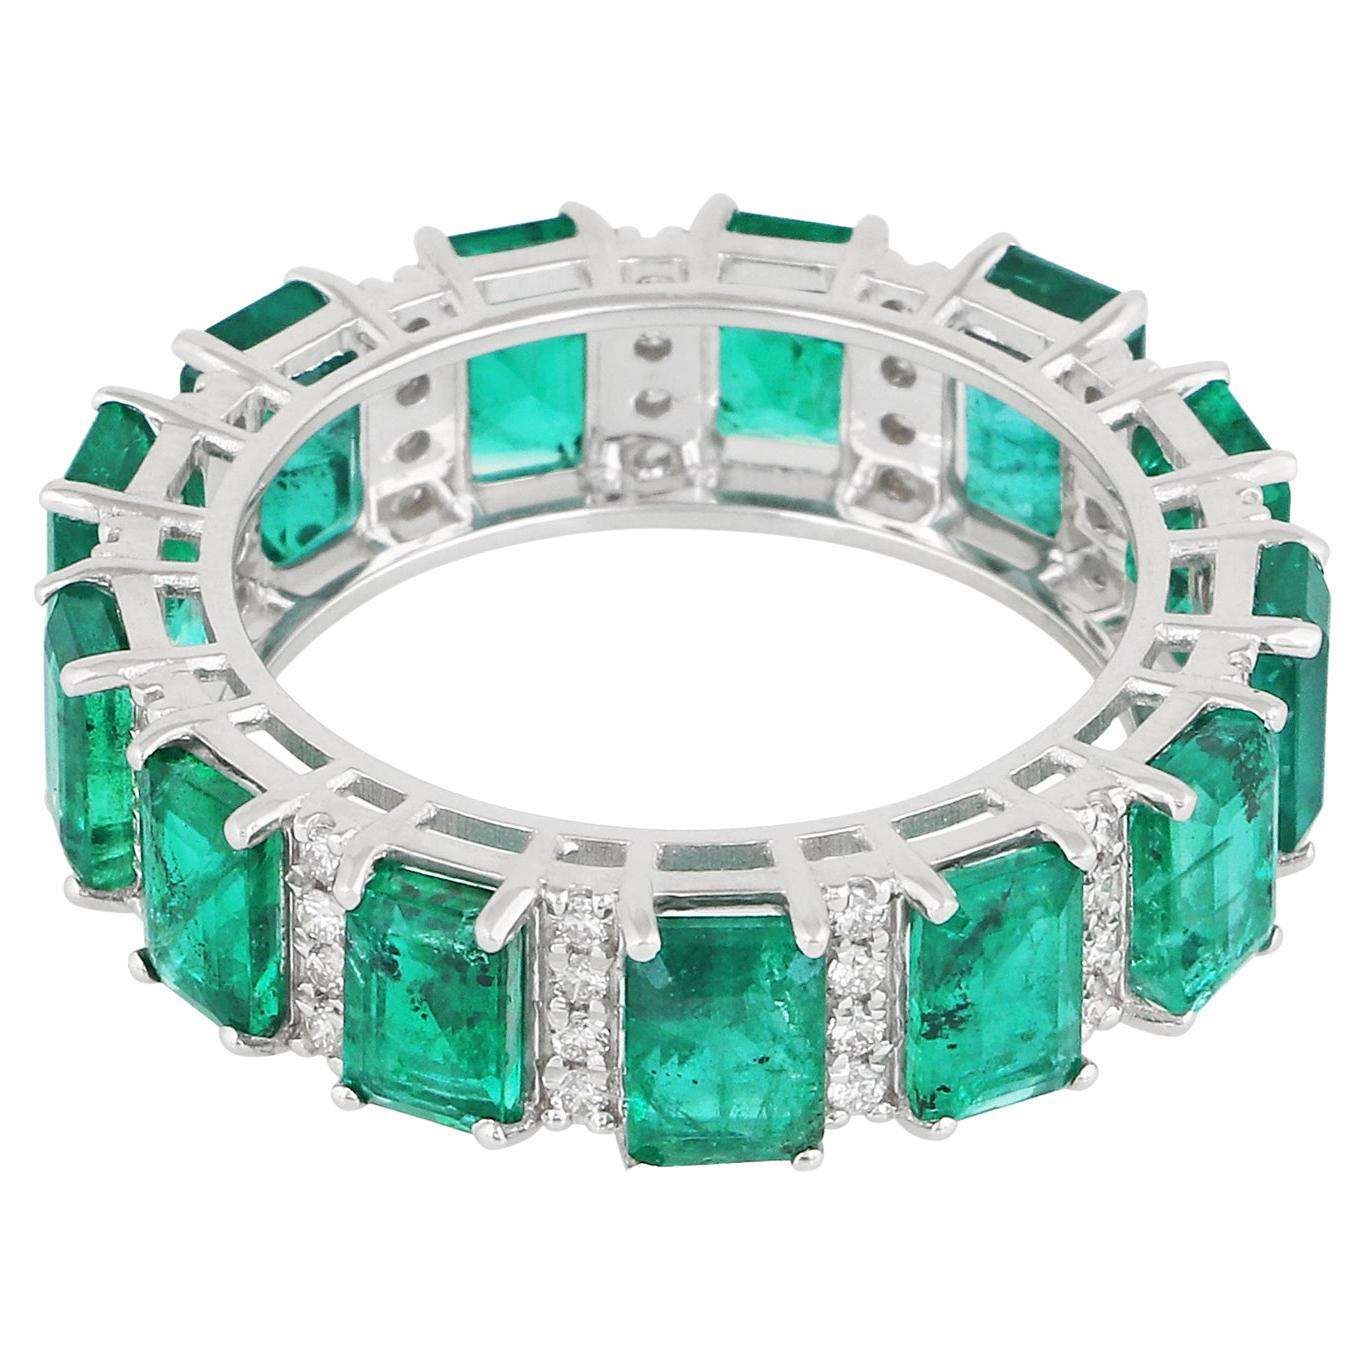 Zambian Emerald Gemstone Band Ring Diamond Pave 18 Karat White Gold Fine Jewelry